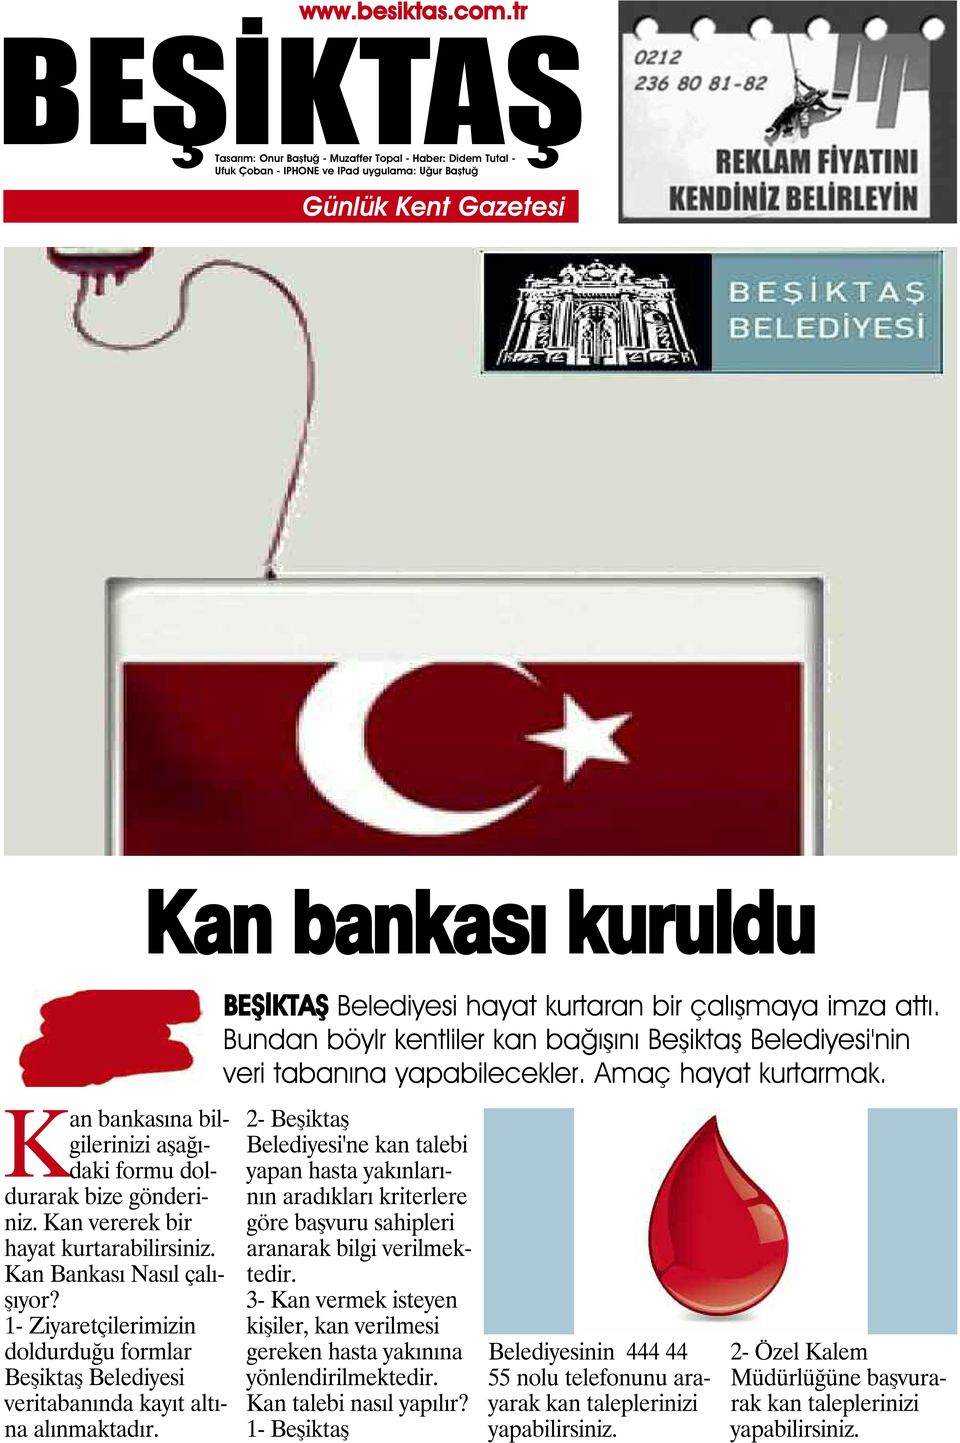 Bundan böylr kentliler kan bağışını Beşiktaş Belediyesi'nin veri tabanına yapabilecekler. Amaç hayat kurtarmak.